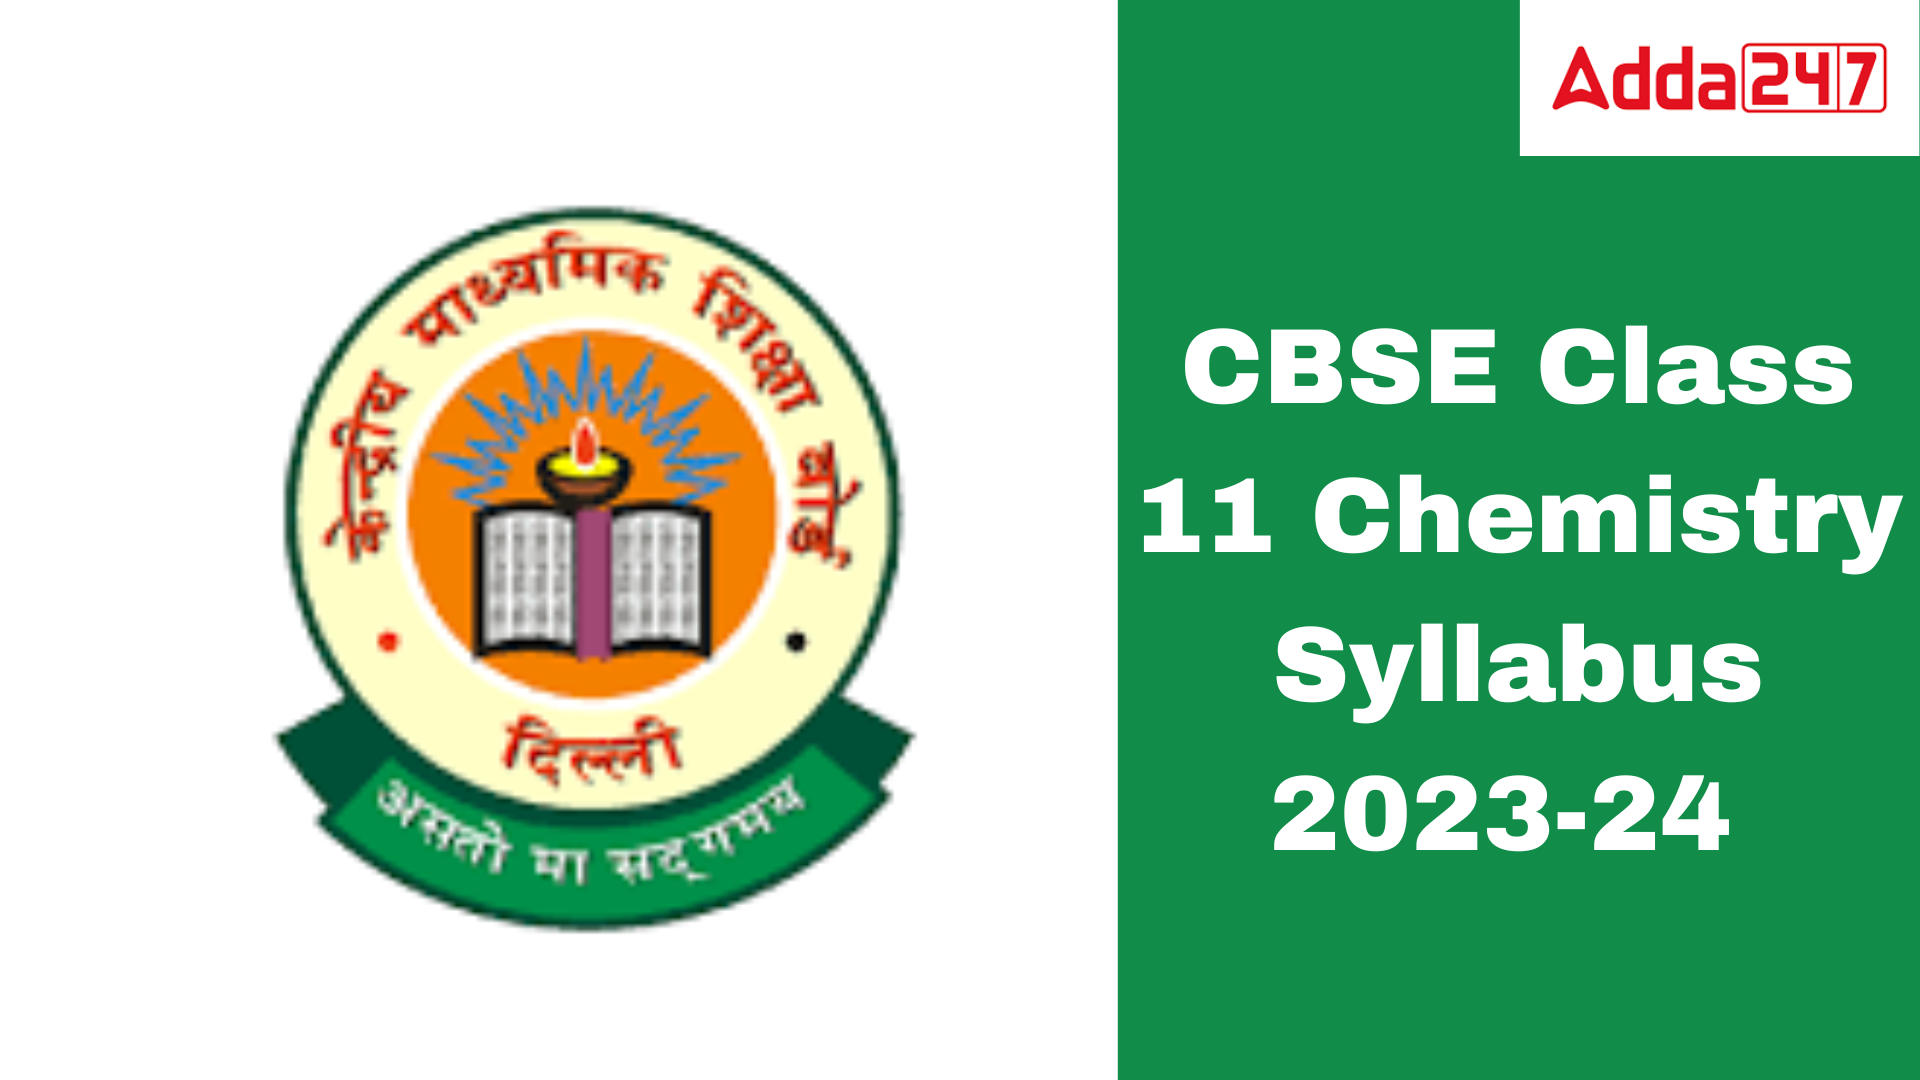 CBSE Class 11 Chemistry Syllabus 2023-24